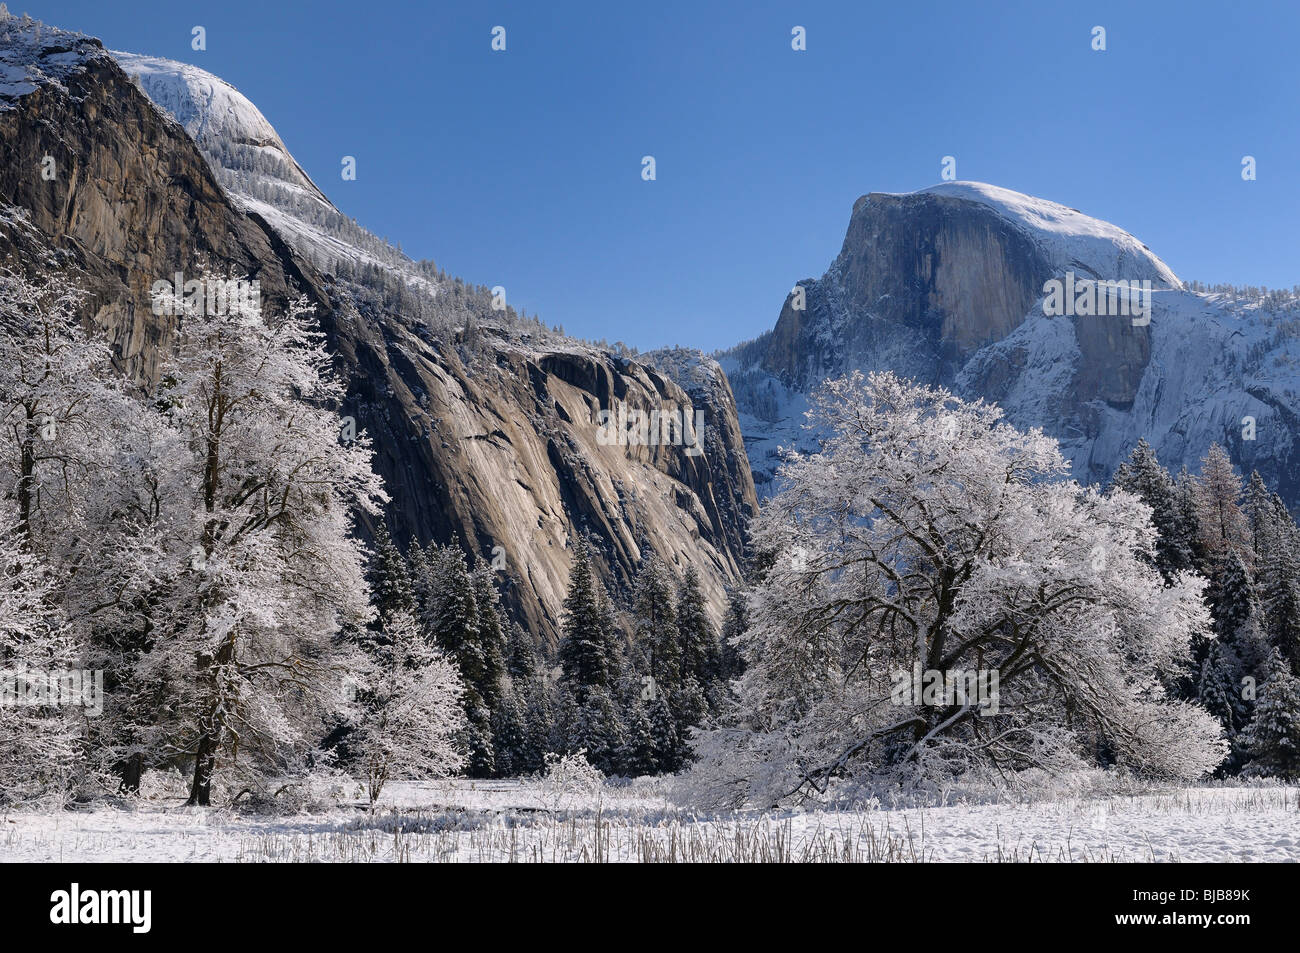 Chiara giornata invernale dopo una nevicata nel prato di cuochi con coperta di neve alberi cupola del nord e mezza cupola cime del parco nazionale Yosemite in California usa Foto Stock